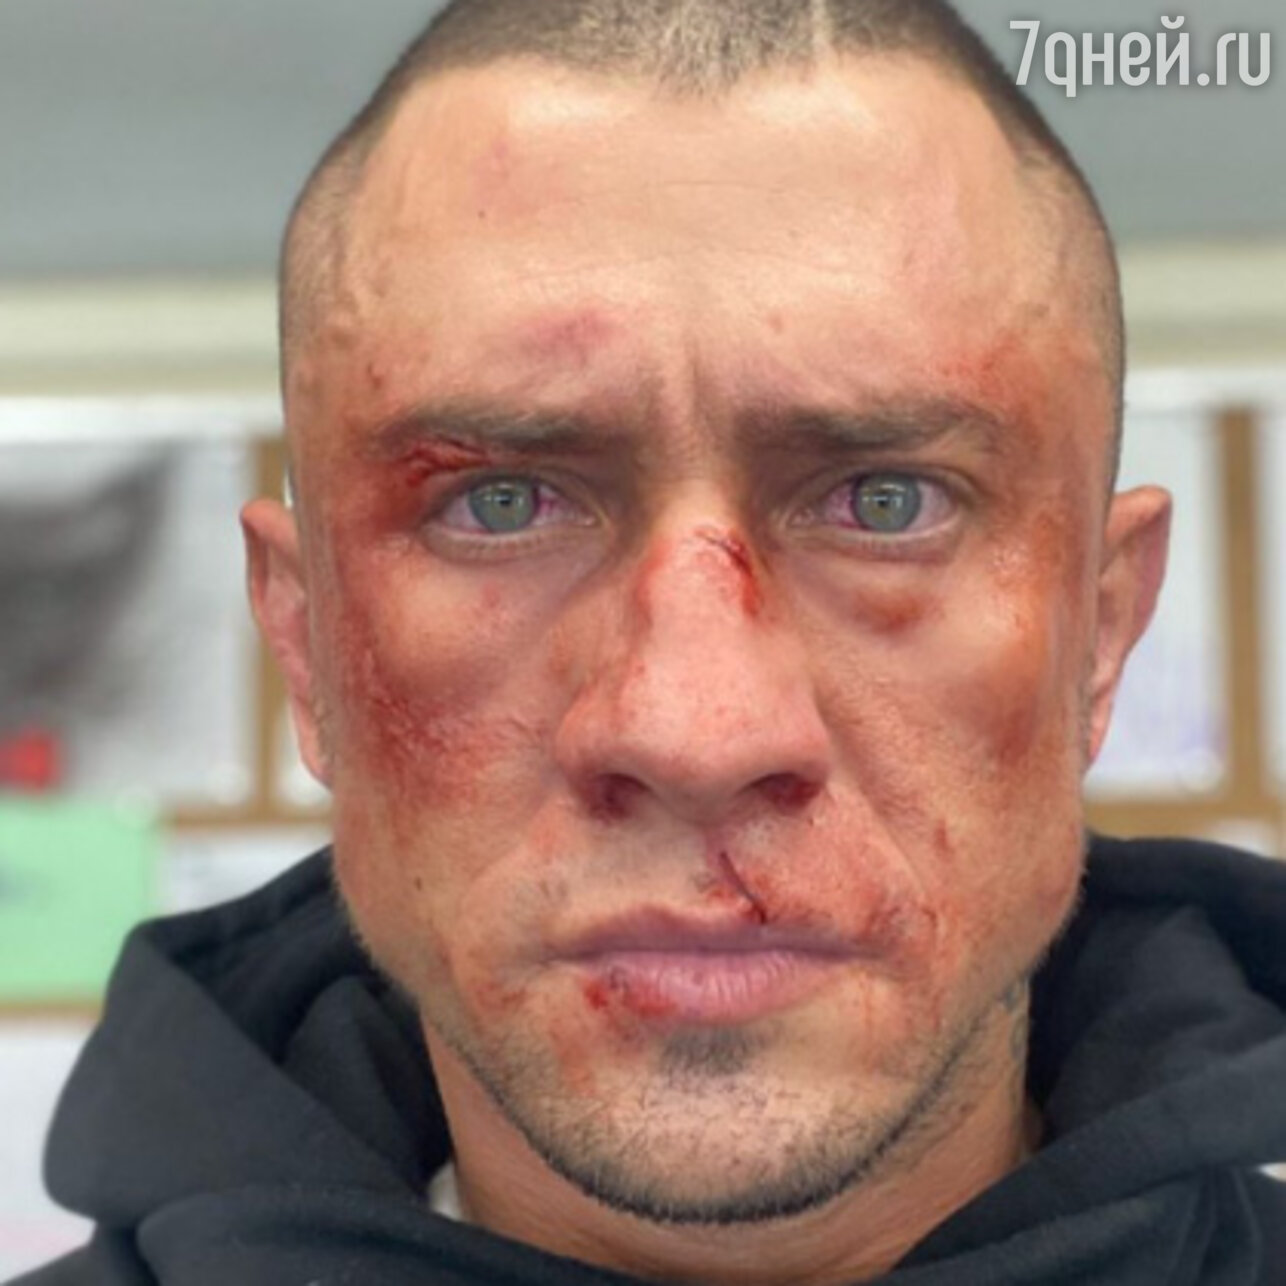 Жуткое фото разбитого лица бойца UFC облетело соцсети